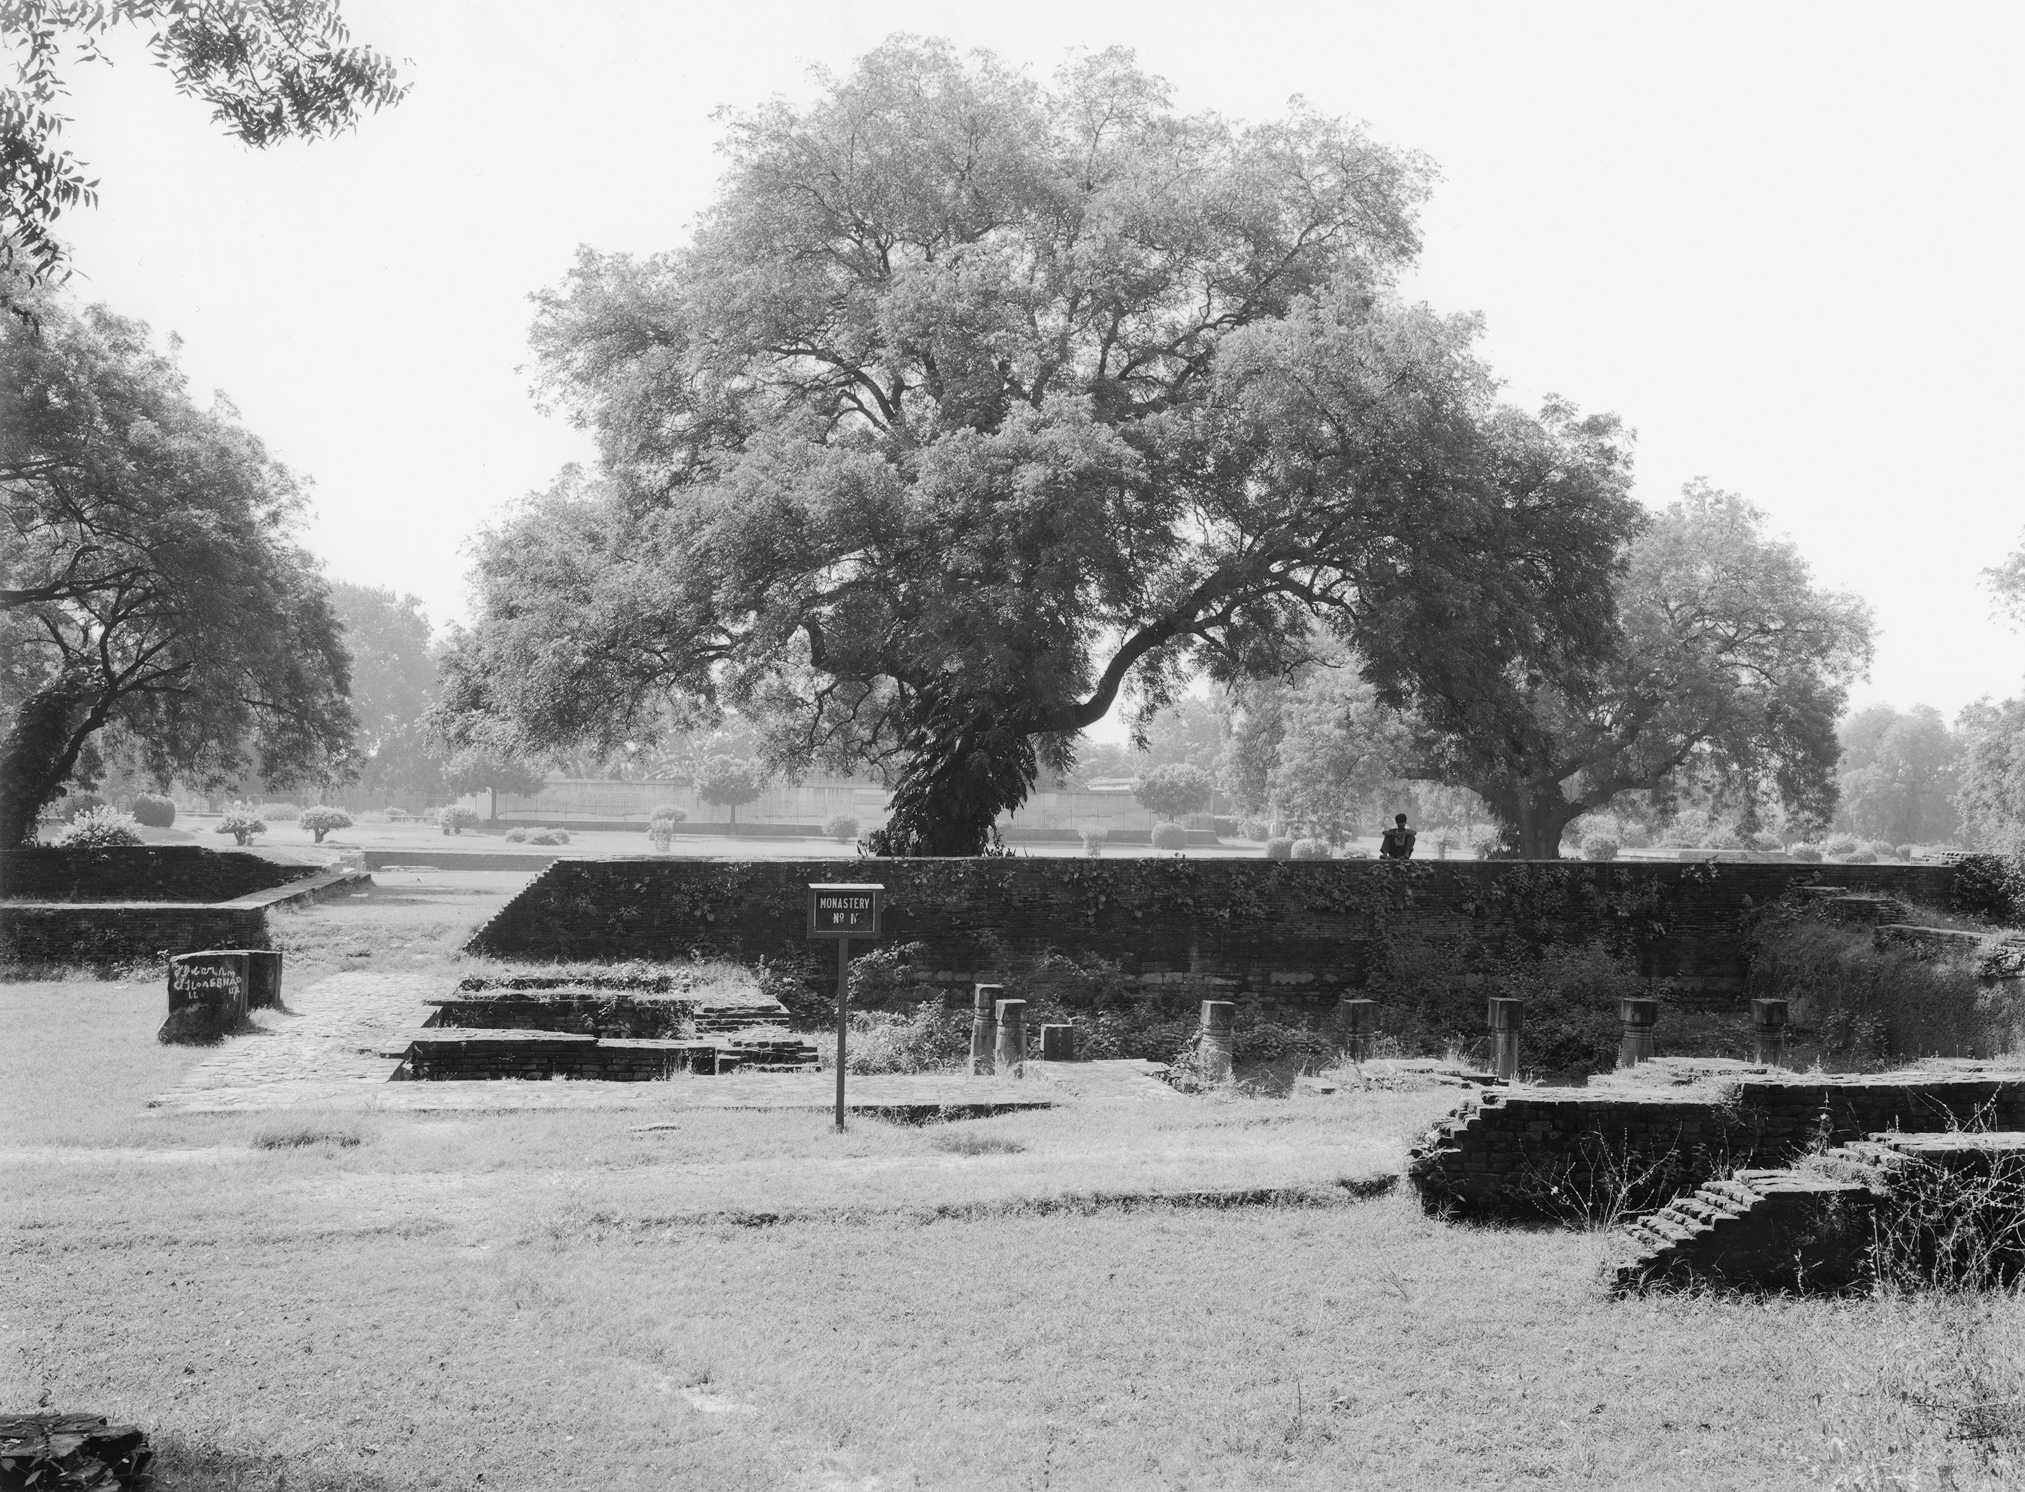 Sarnath, India 2000